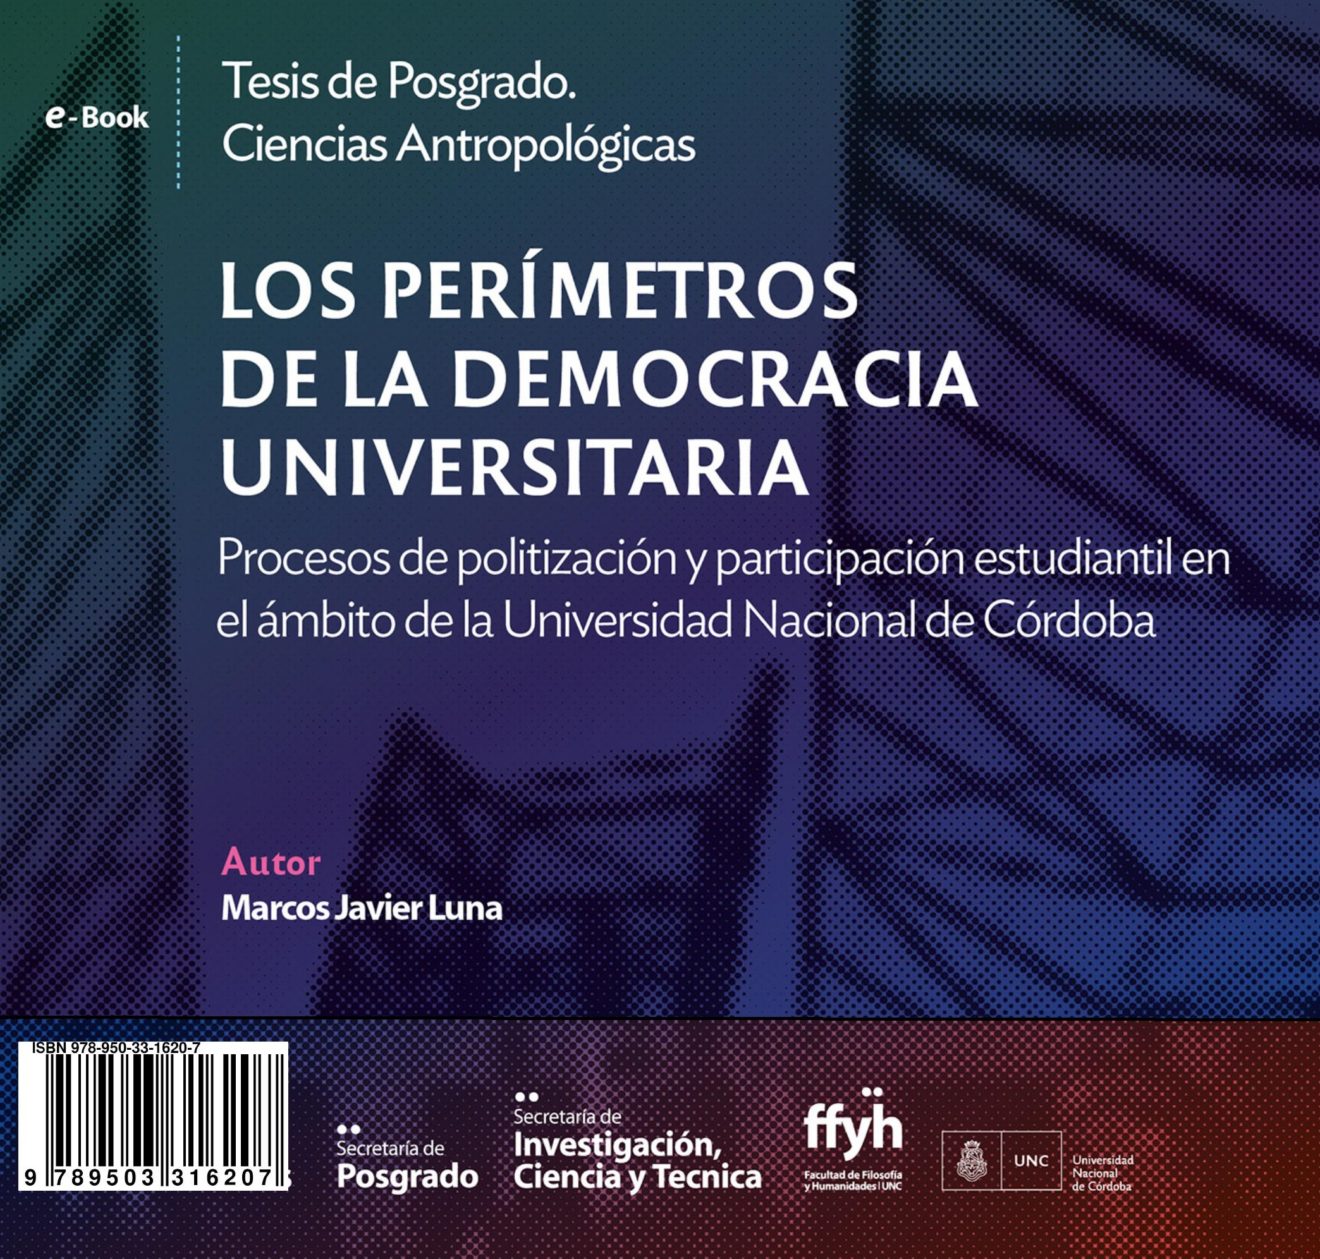 Nuevo e-book: “Los perímetros de la democracia universitaria”, de Marcos Luna